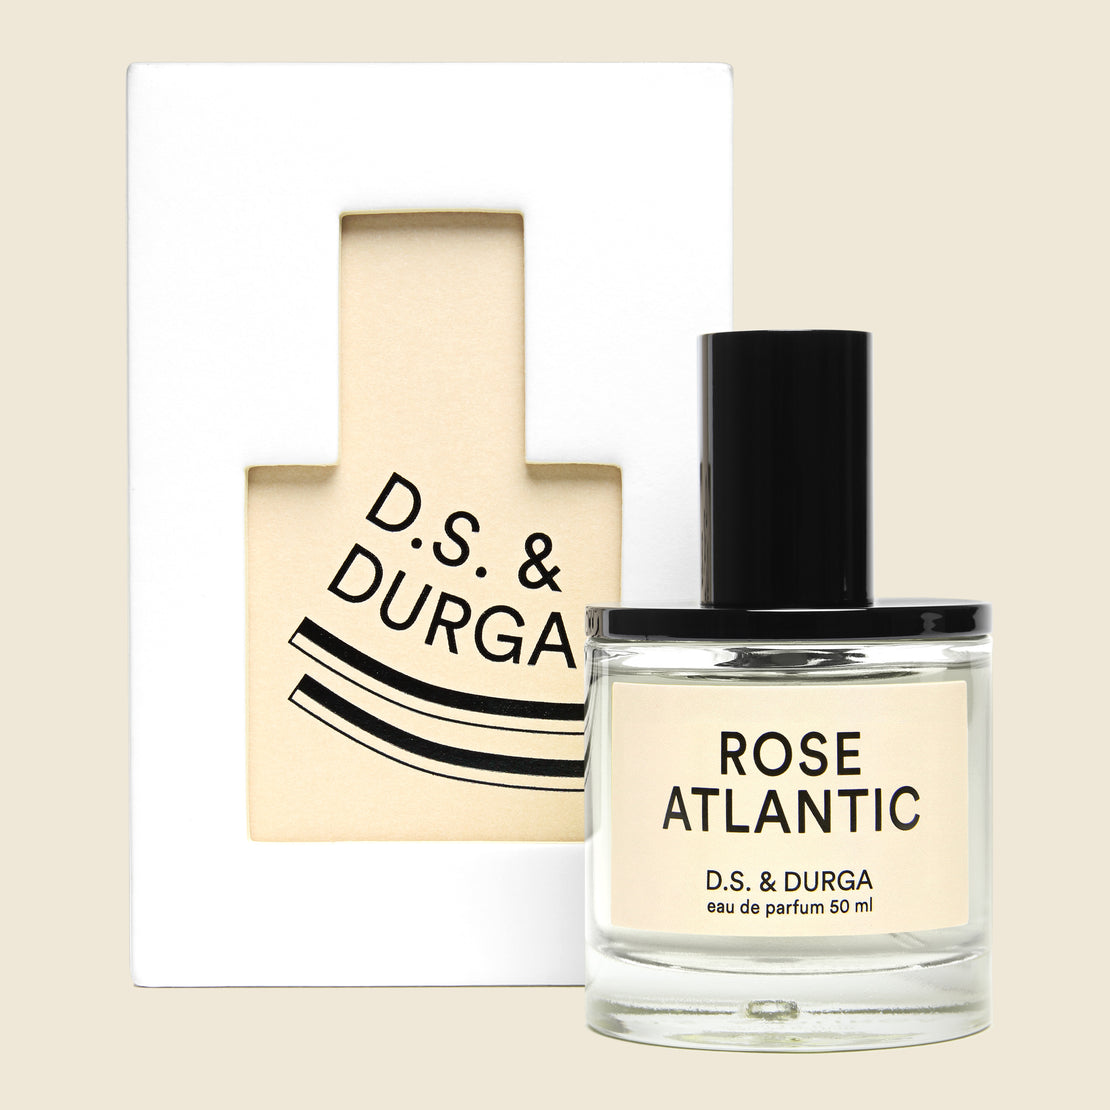 D.S. & Durga Perfume - Rose Atlantic